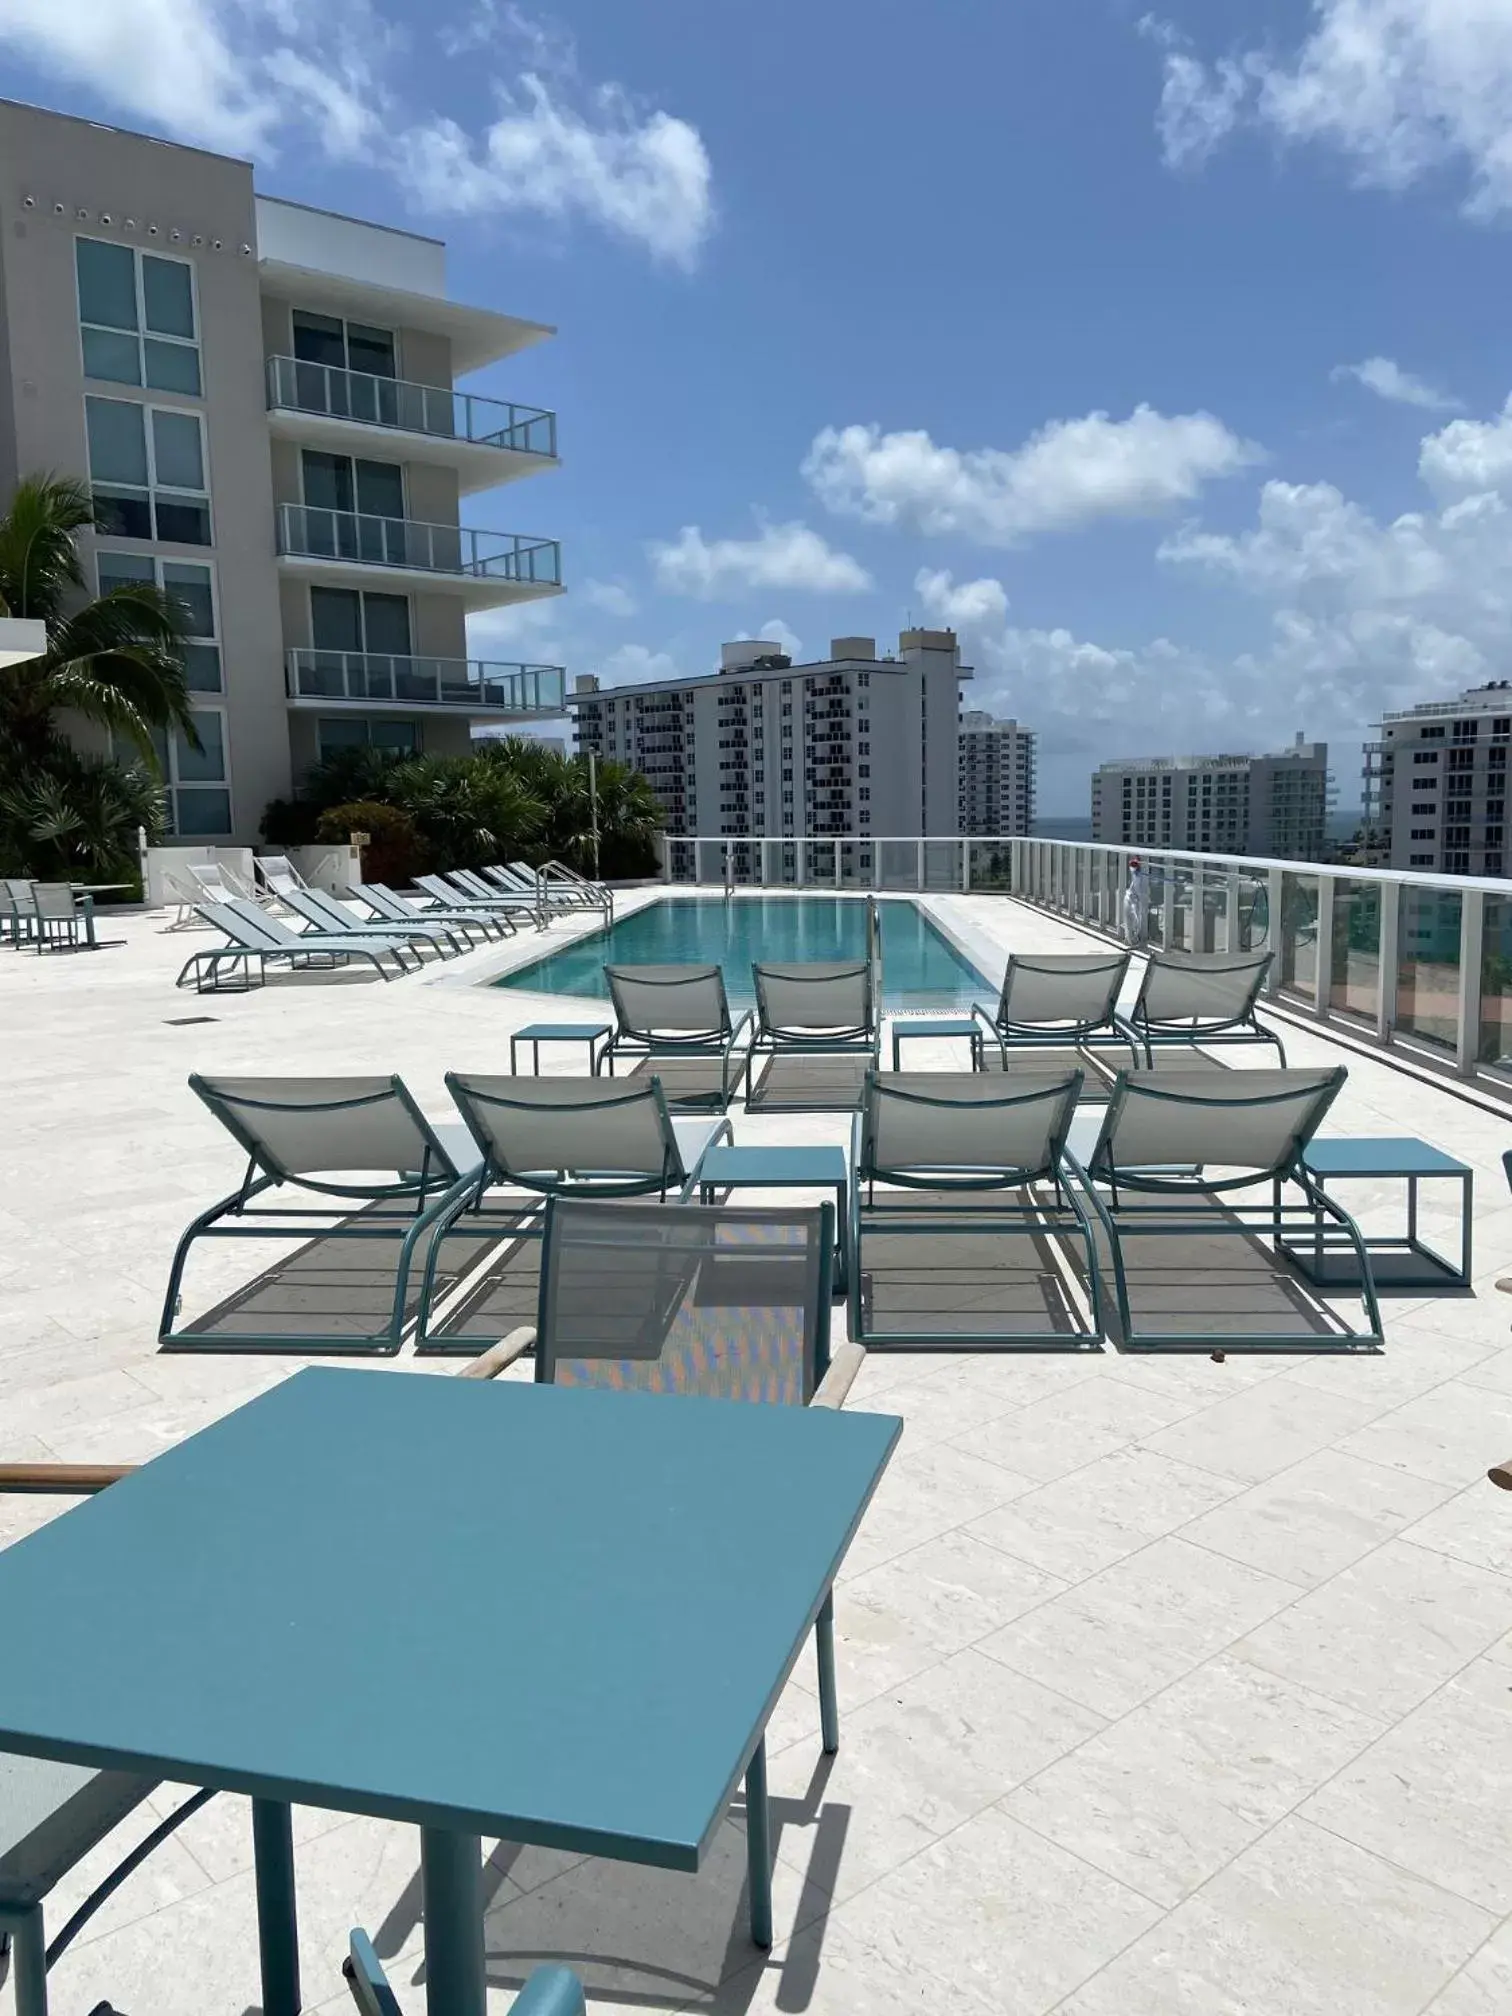 Swimming pool in The Kimpton Shorebreak Fort Lauderdale Beach Resort